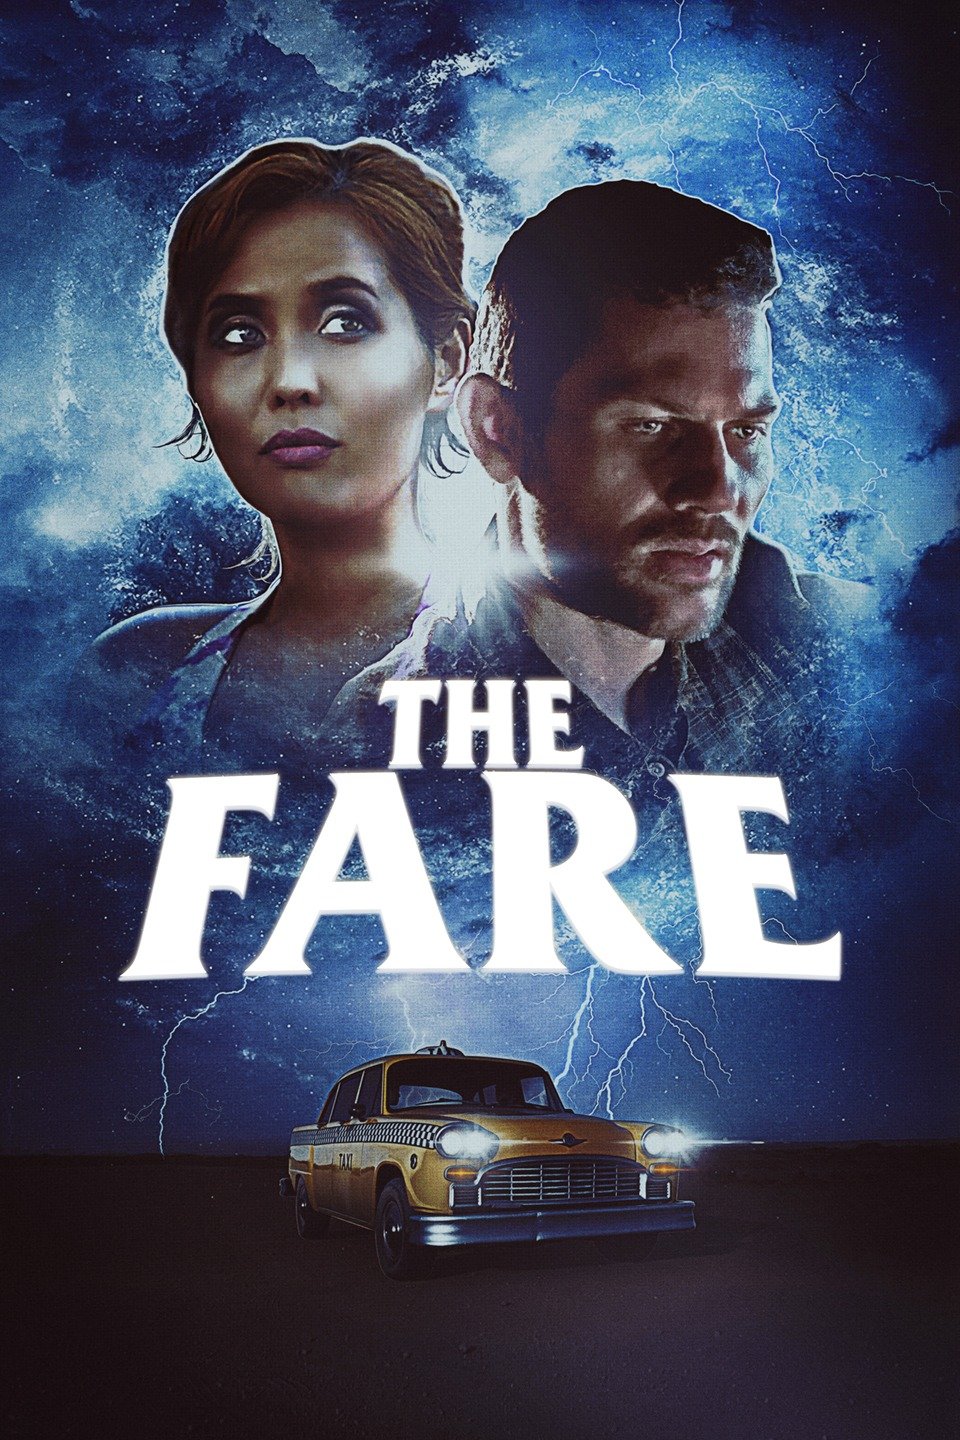 The Fare (2019)